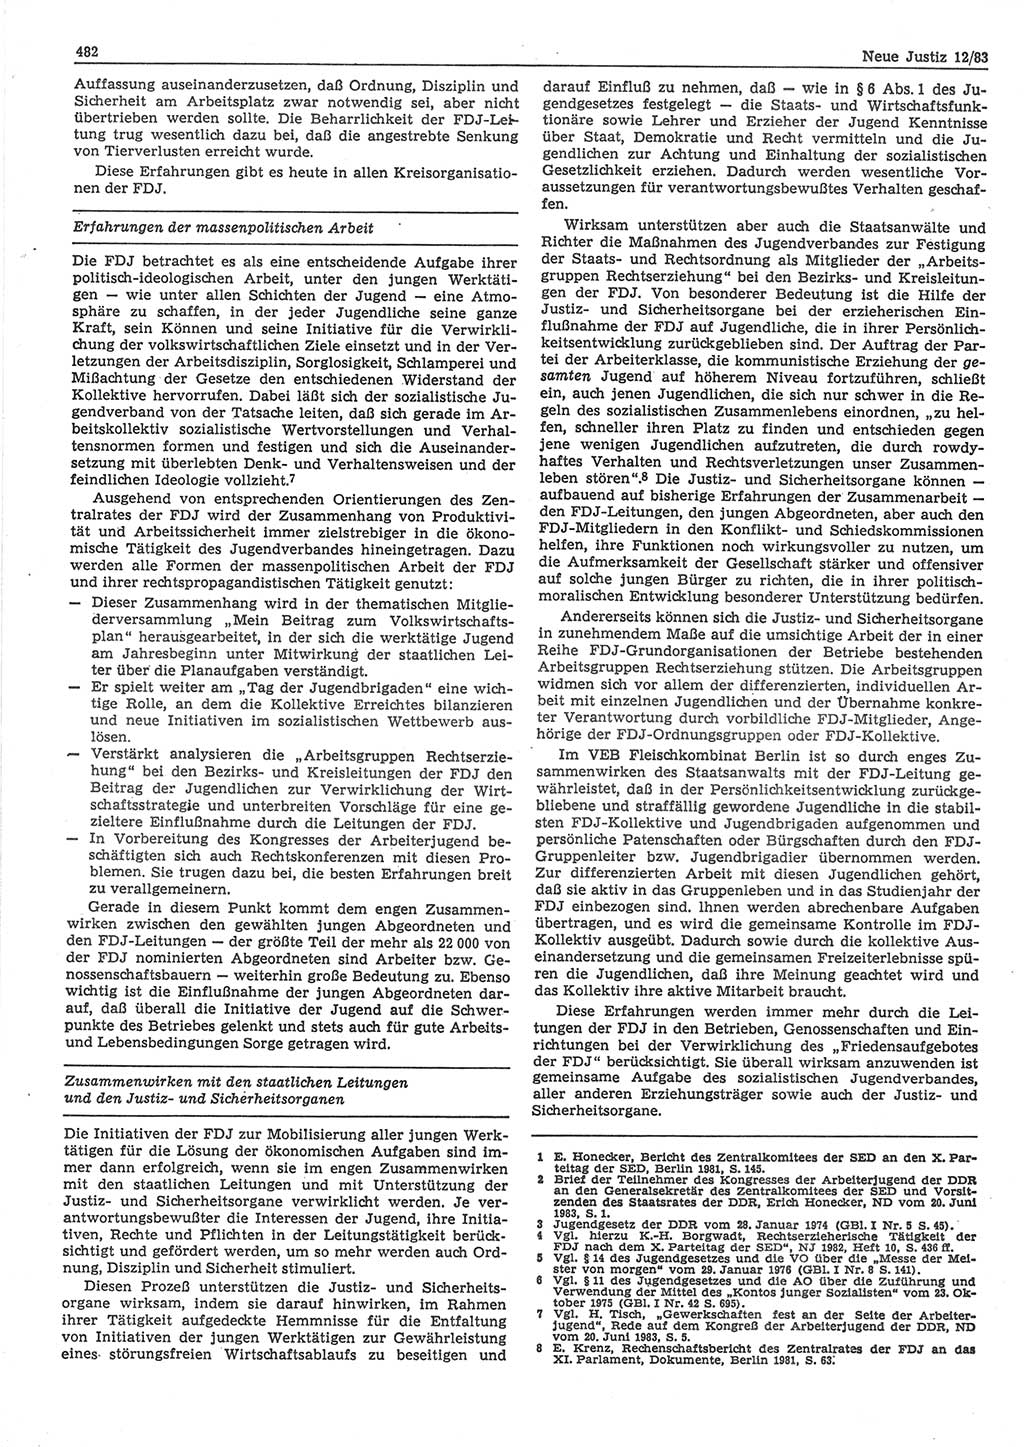 Neue Justiz (NJ), Zeitschrift für sozialistisches Recht und Gesetzlichkeit [Deutsche Demokratische Republik (DDR)], 37. Jahrgang 1983, Seite 482 (NJ DDR 1983, S. 482)